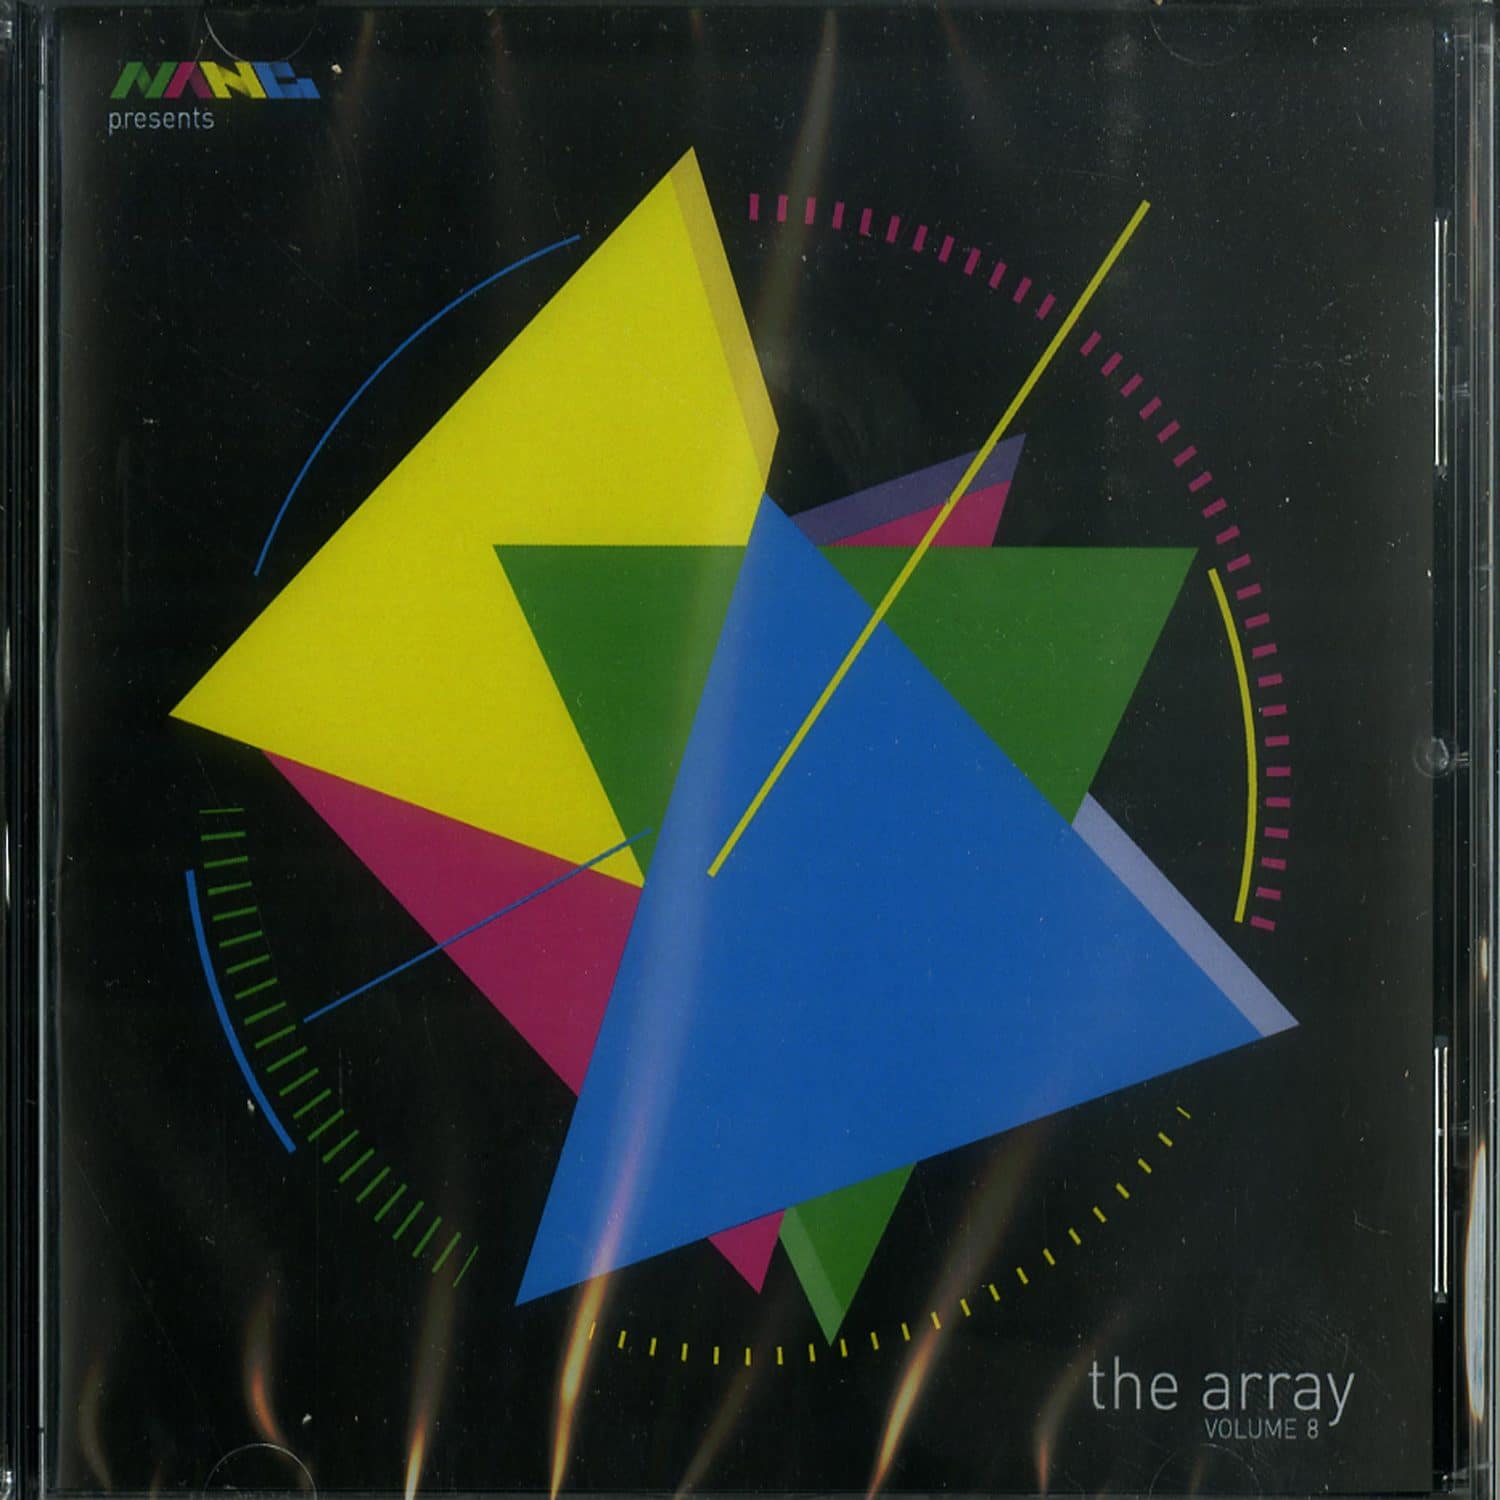 Various Artists - NANG PRESENTS THE ARRAY VOL. 8 